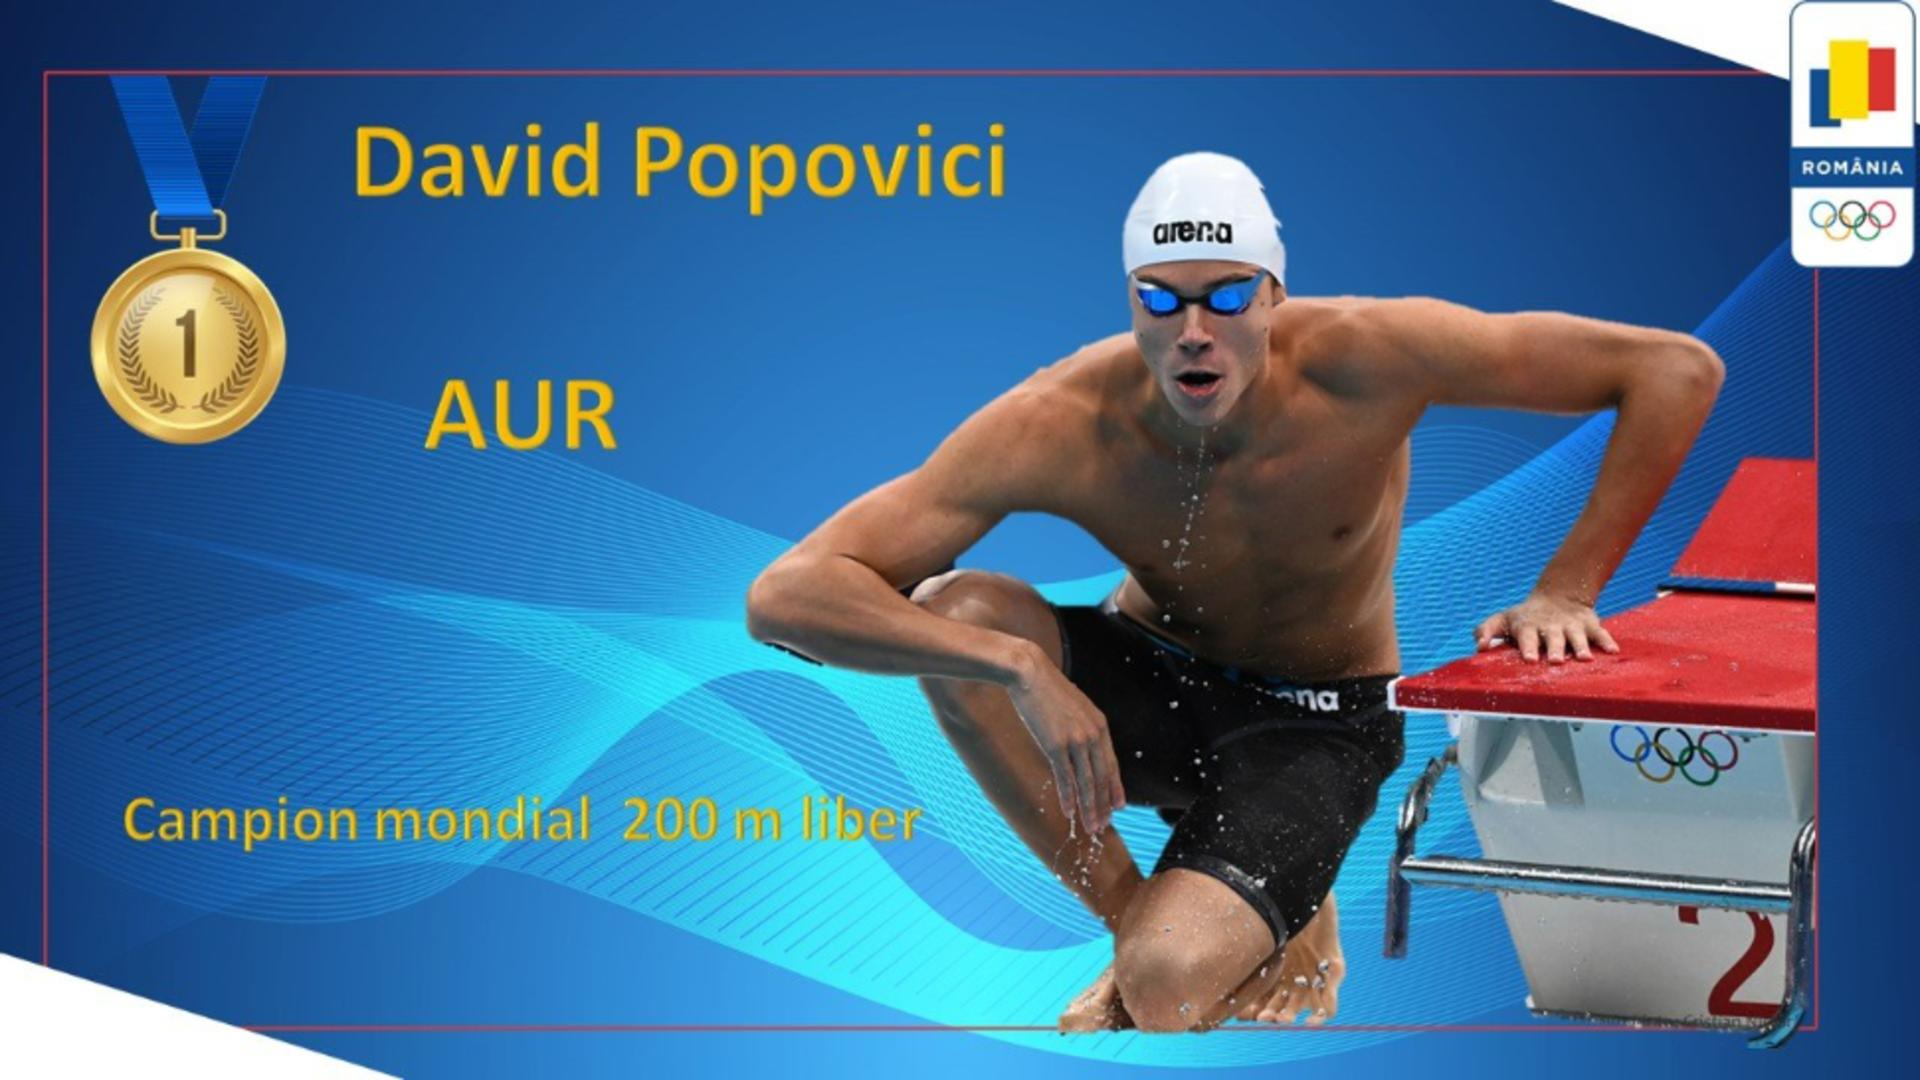 David Popovici